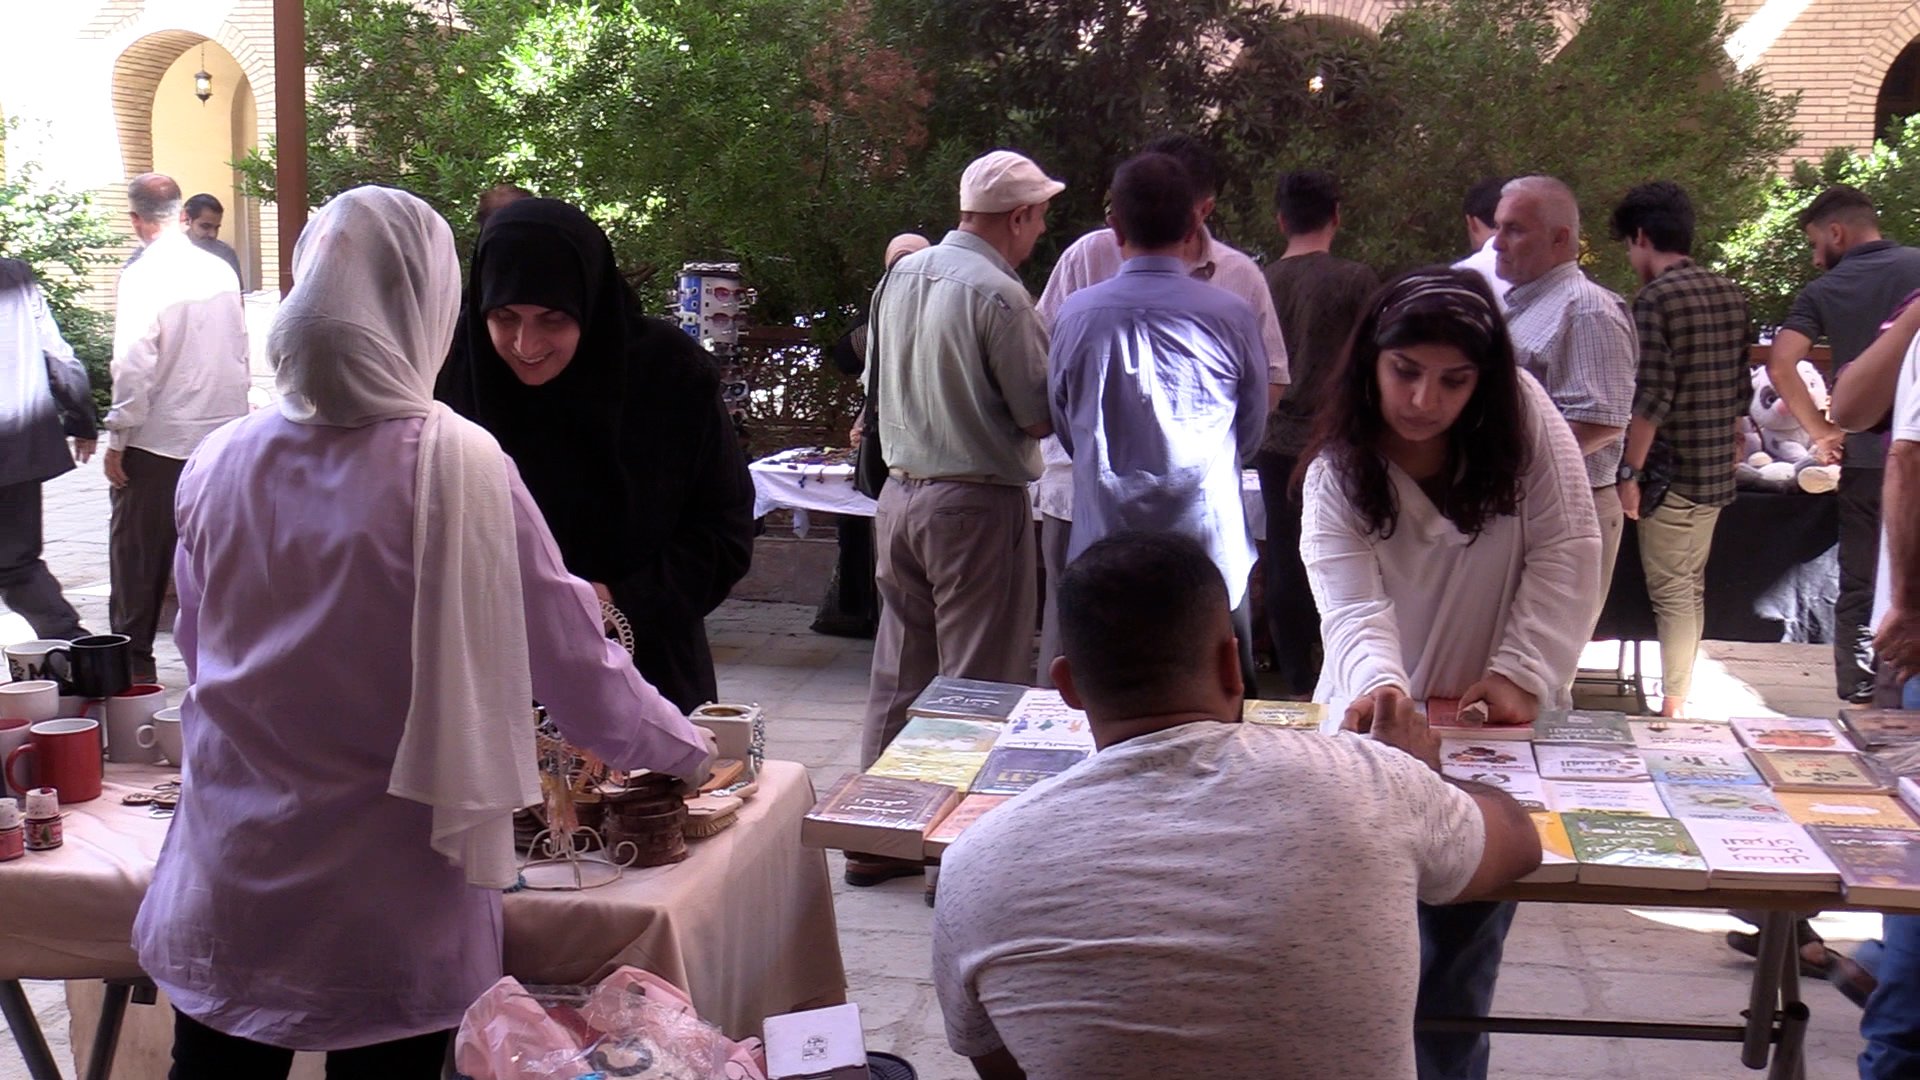 الفتيات والفتيان يعرضون منتجاتهم اليدوية في المركز البغدادي كل جمعة (فيديو)